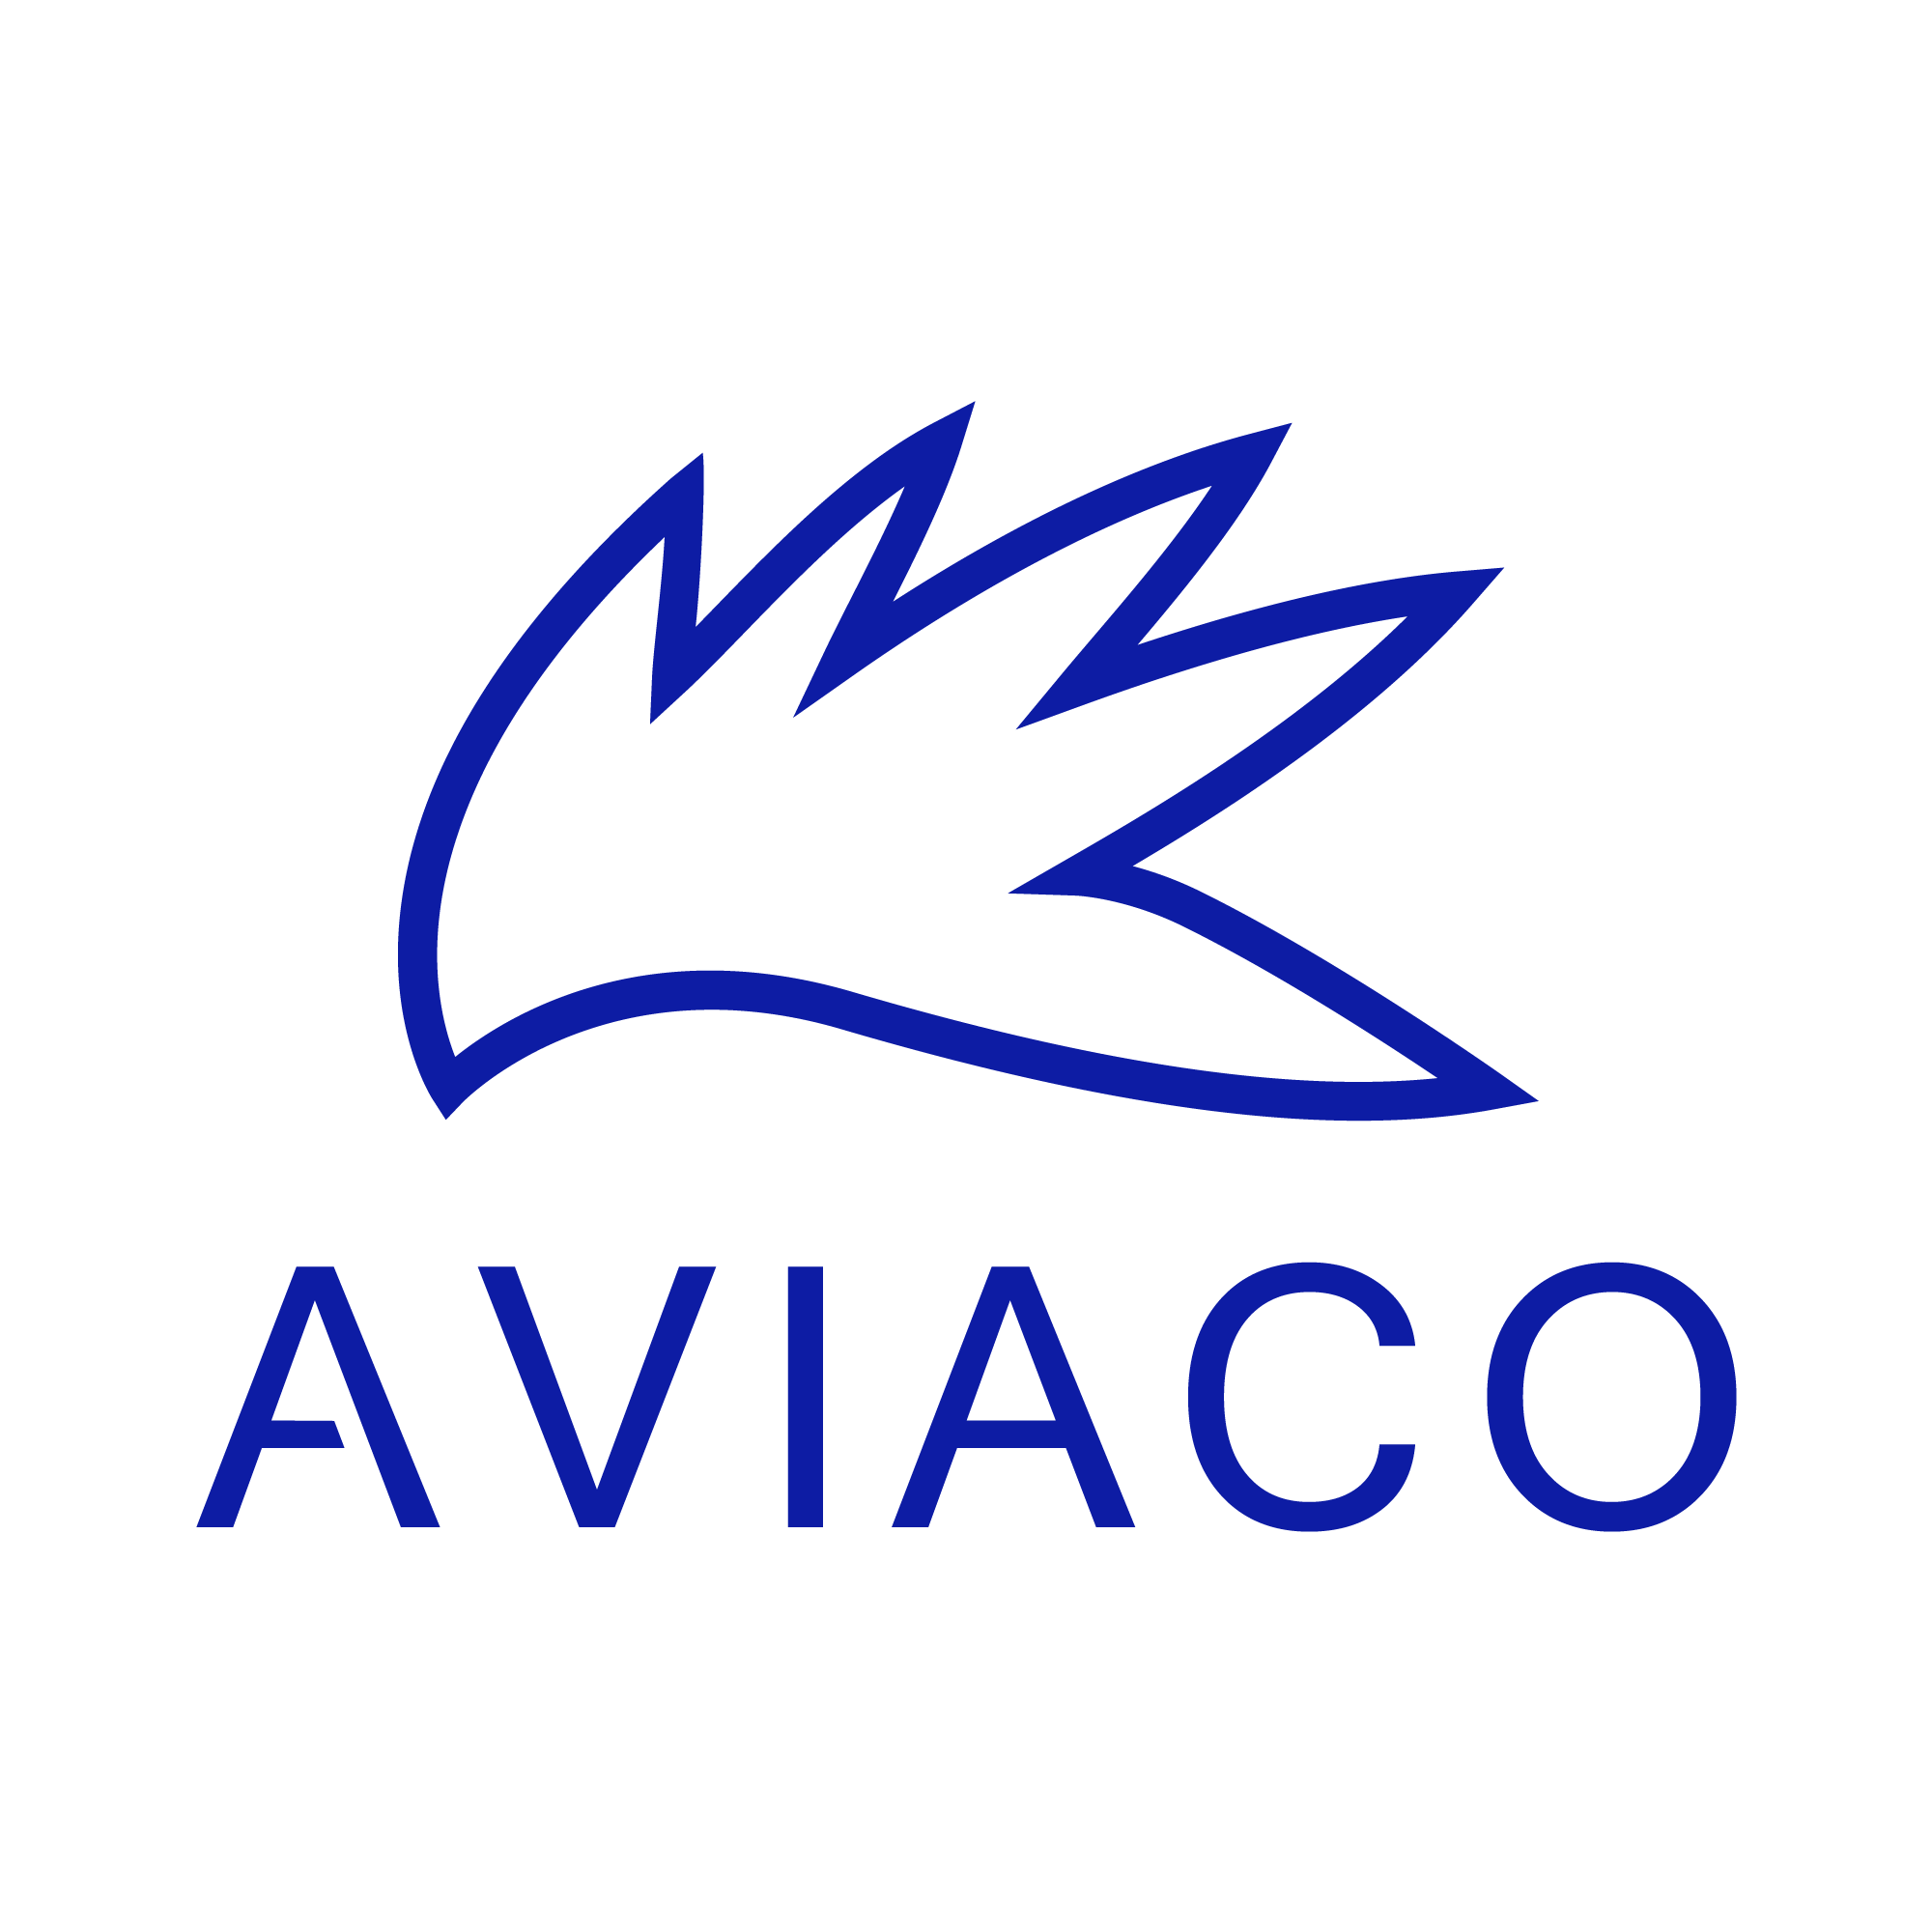 Aviaco logo